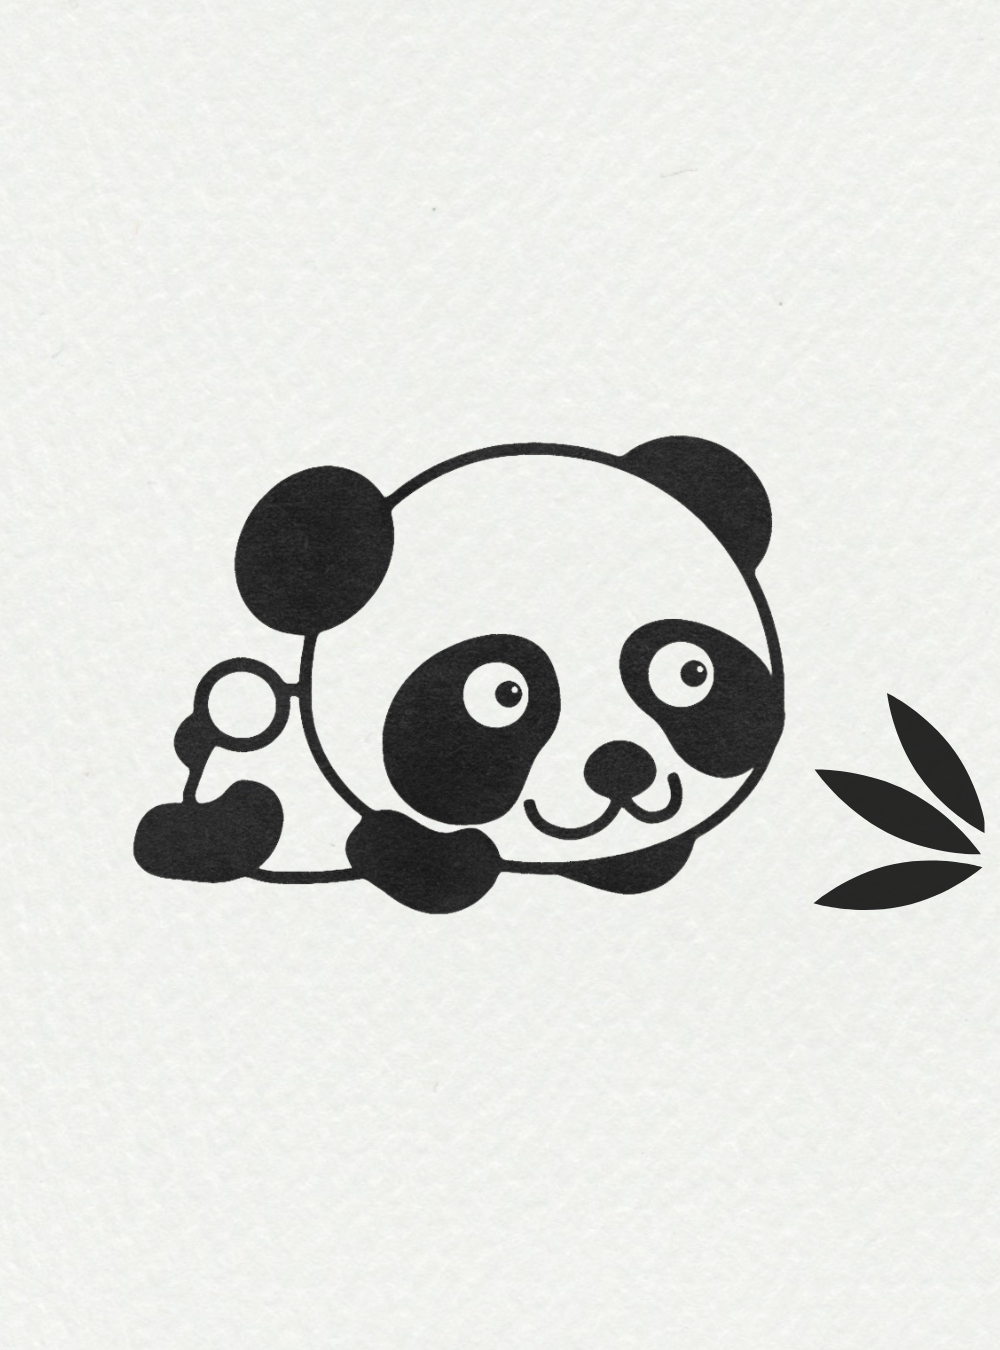 Easy Animal Drawing Ideas: Cute Panda Bear 